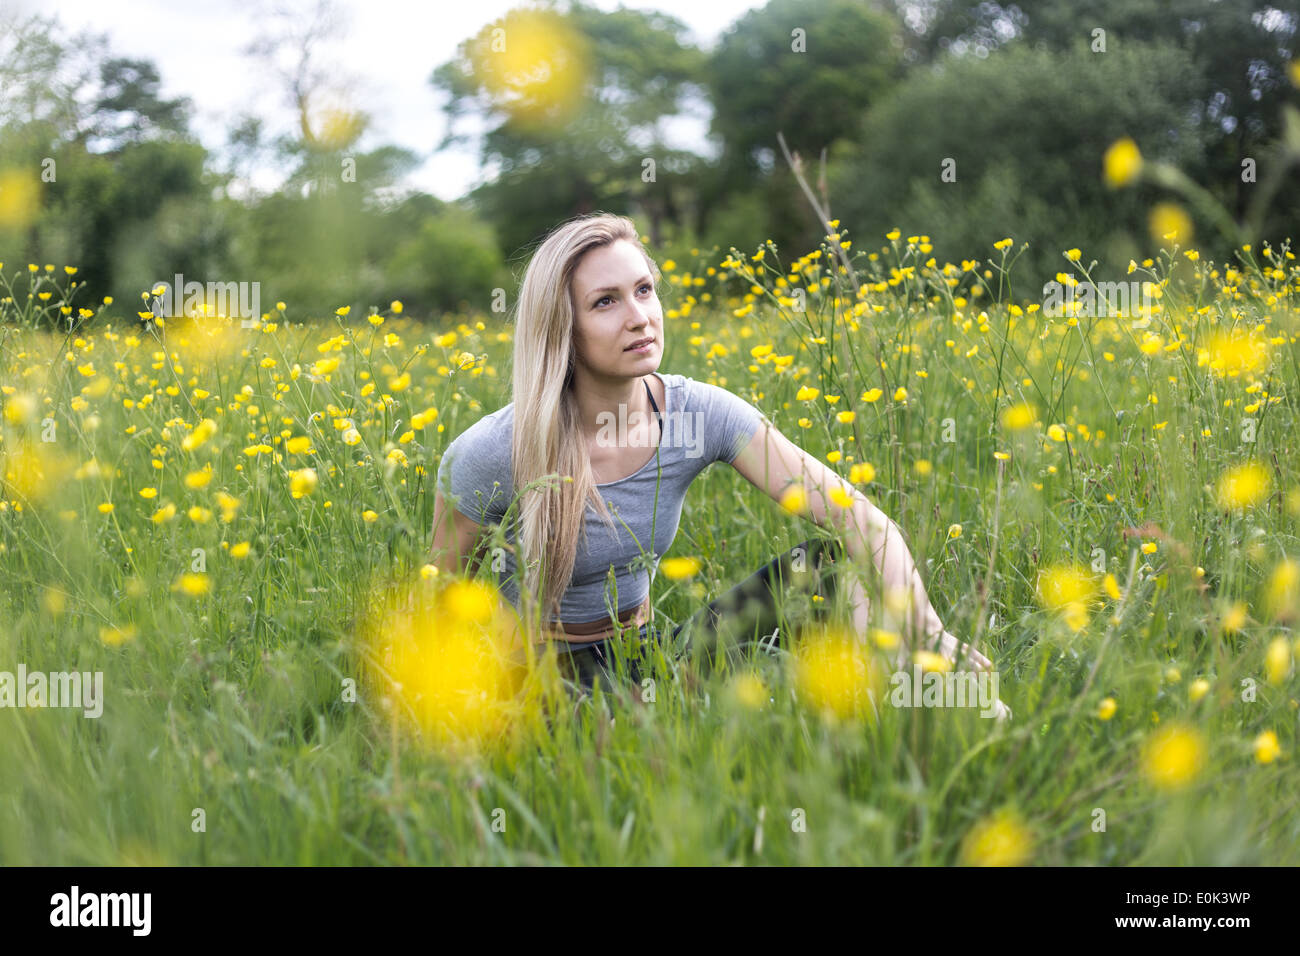 Dame blonde portant des guêtres noires et un top gris assis dans l'herbe avec des fleurs jaunes Hampstead Heath. Banque D'Images